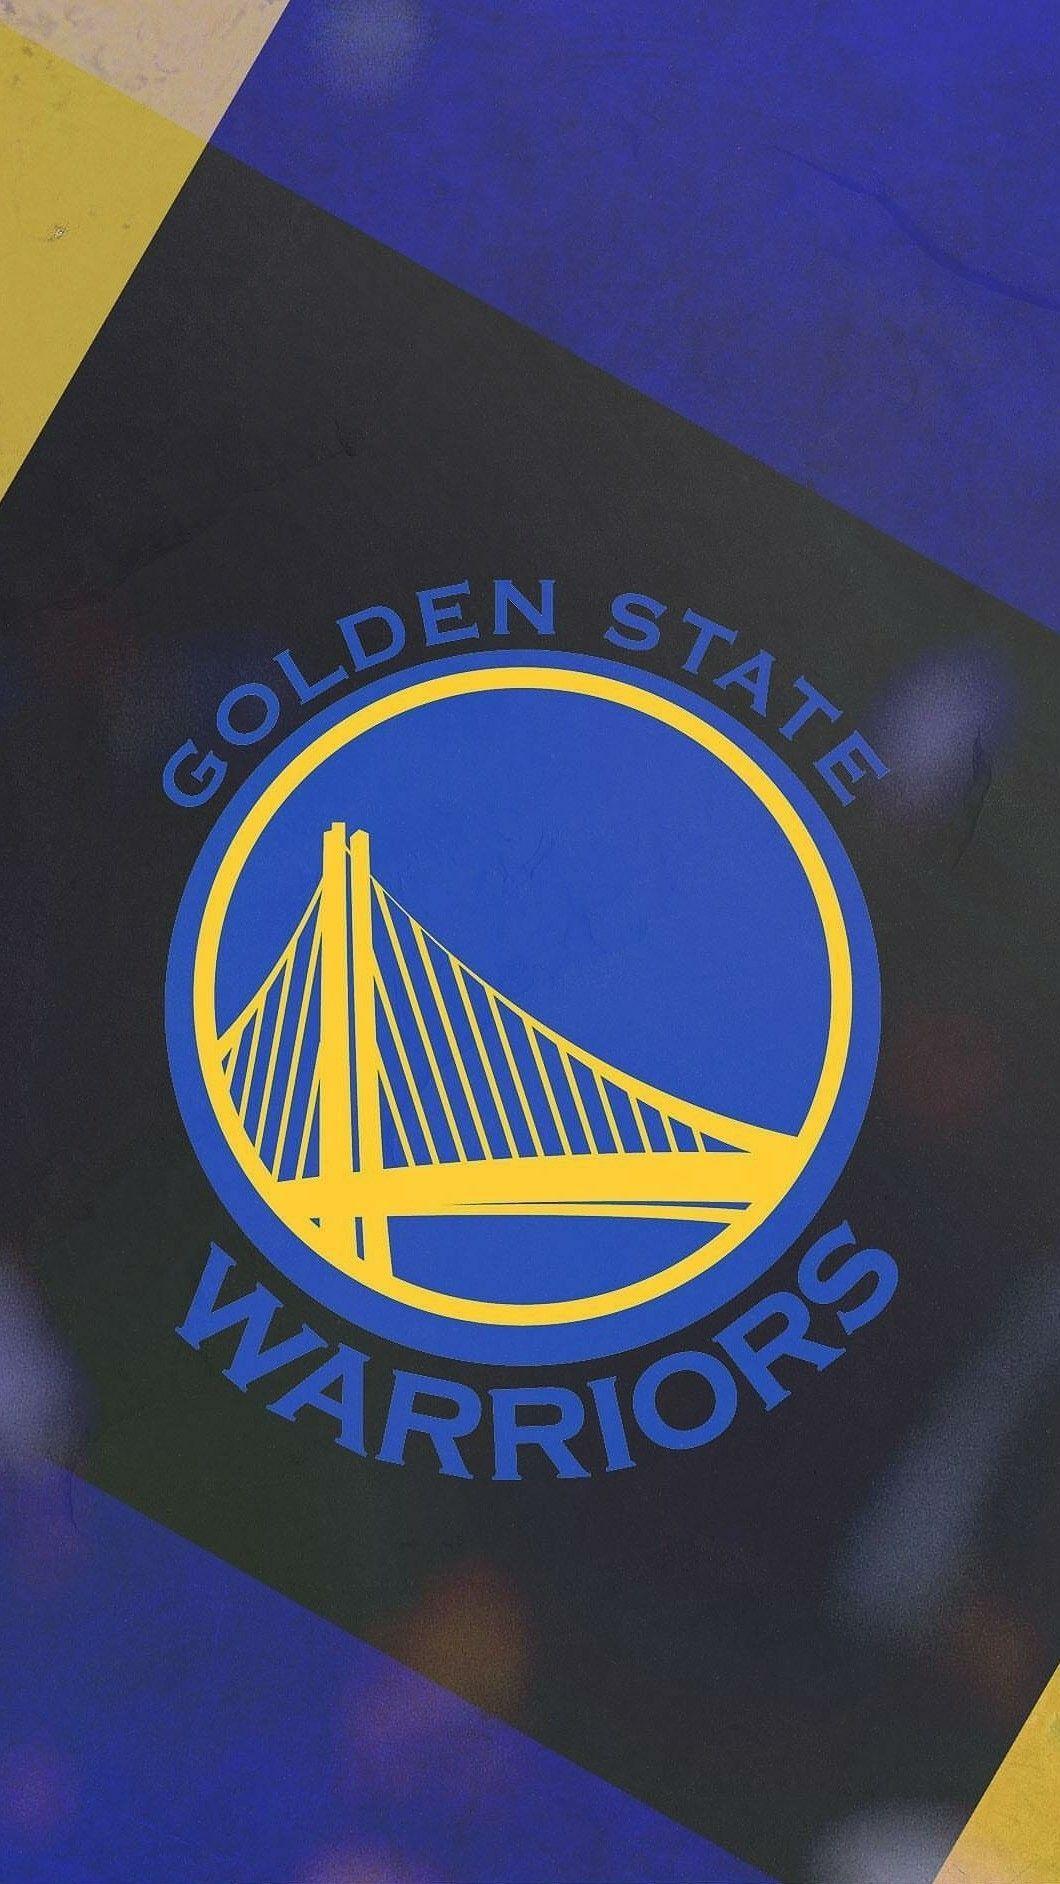 Golden state warriors wallpaper. Basketball. Golden